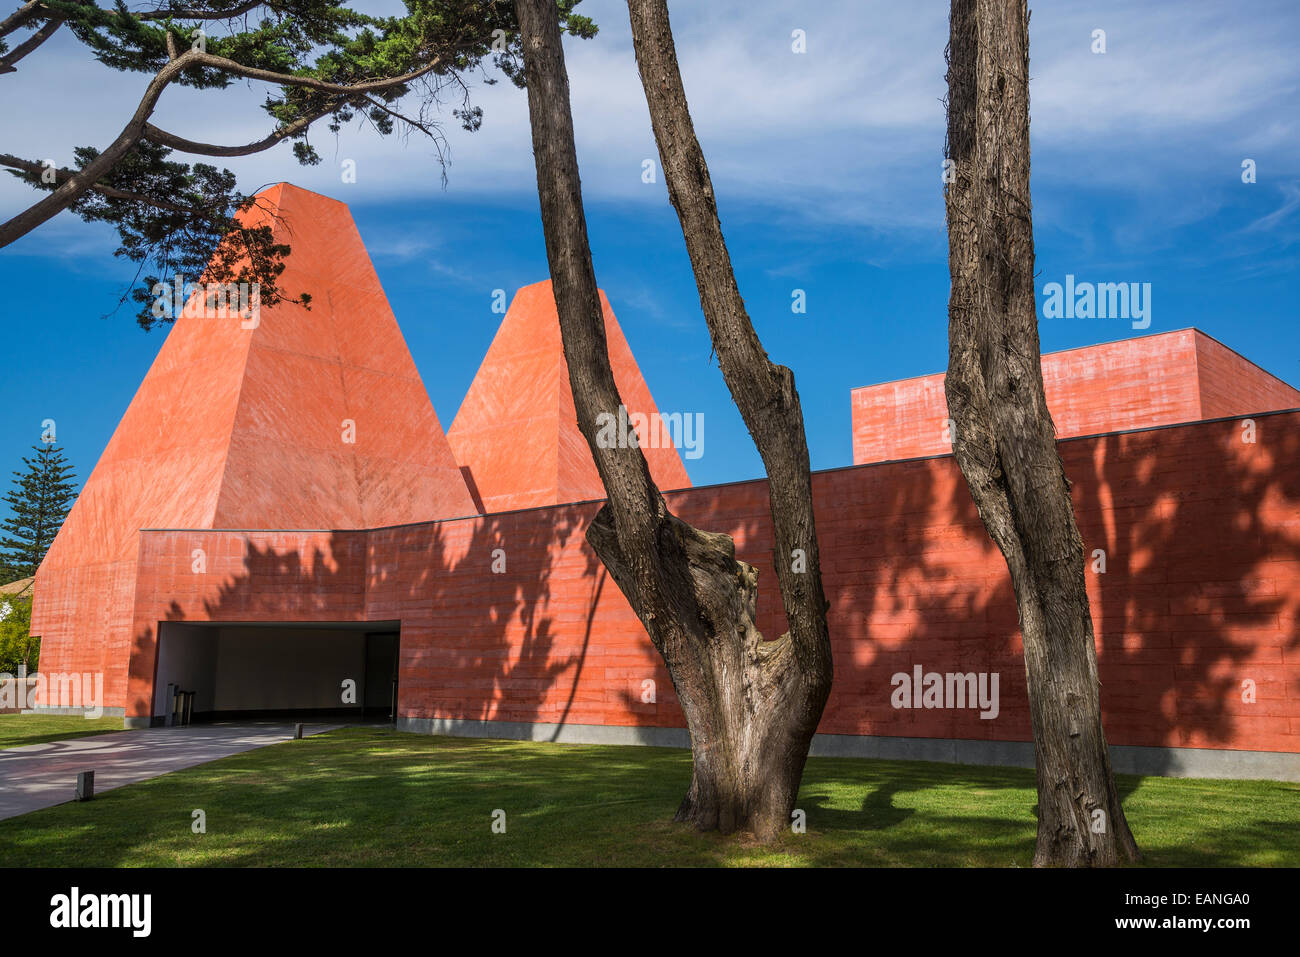 Paula Rego Museum 'House of Stories', Casa das Historias, Cascais, Lisbon, Portugal Stock Photo